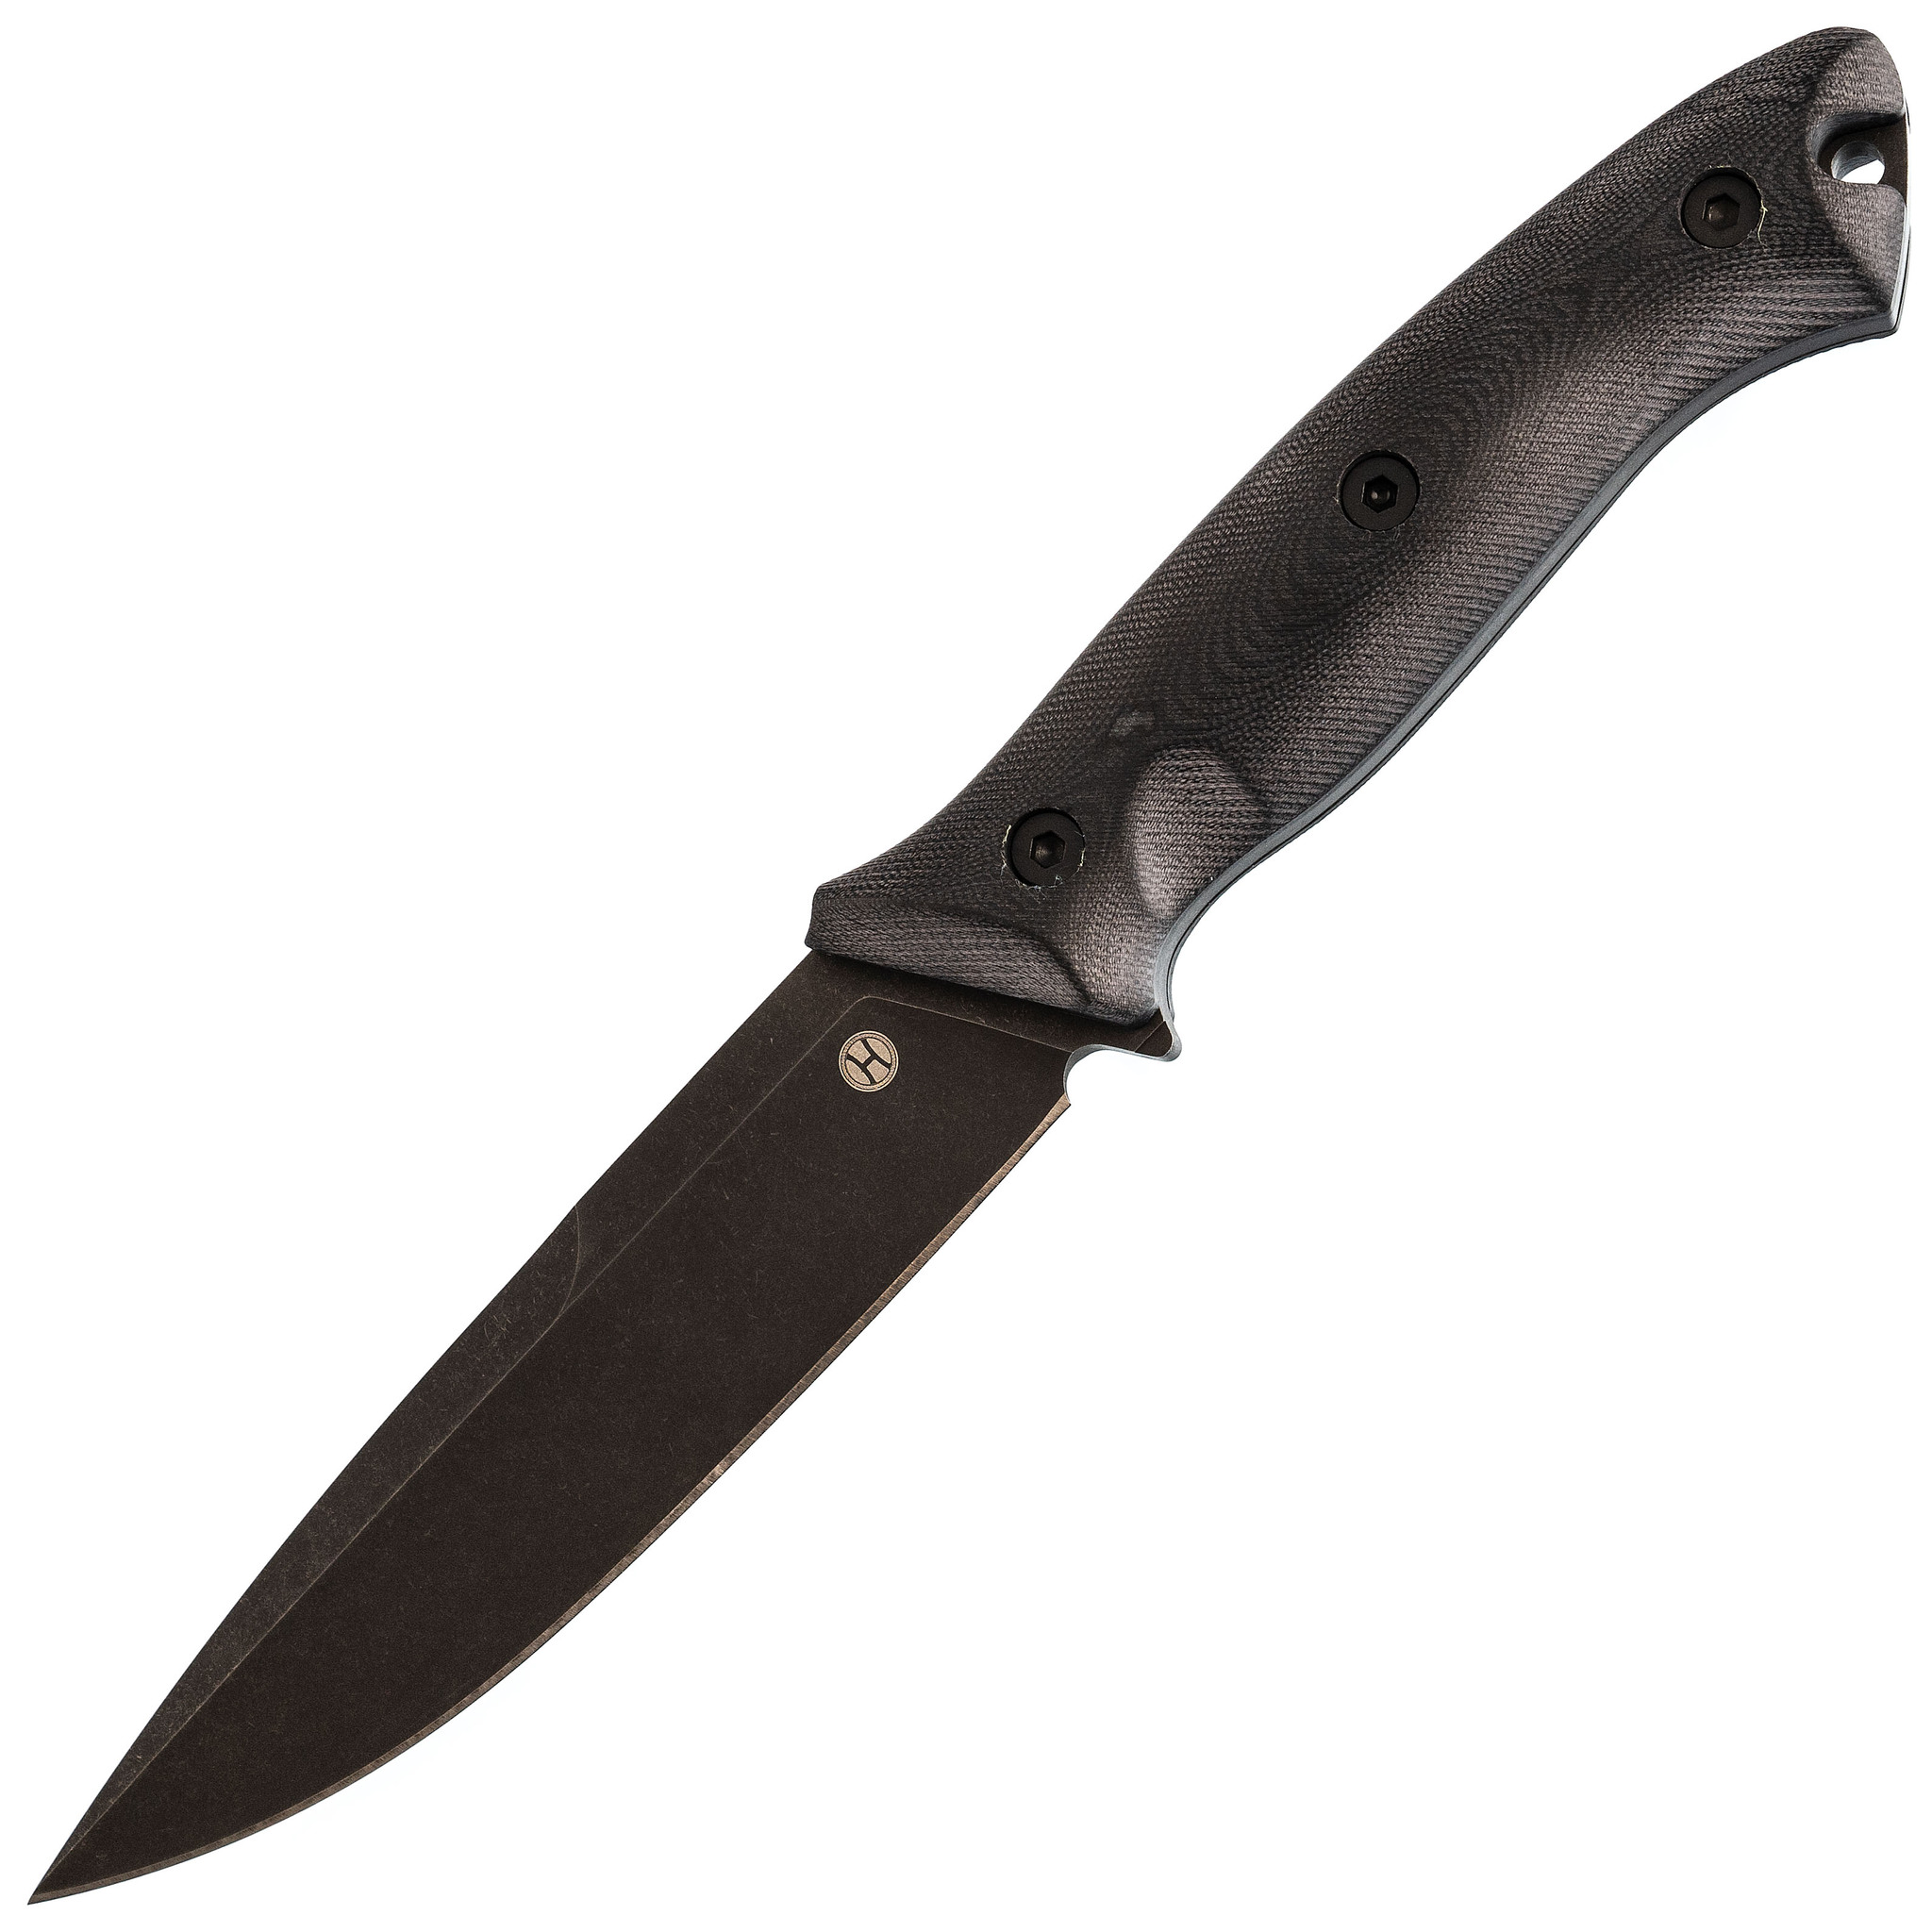 Нож Honor Ranger Dark 265 мм, D2 нож с фиксированным клинком ontario rd4 micarta серрейтор